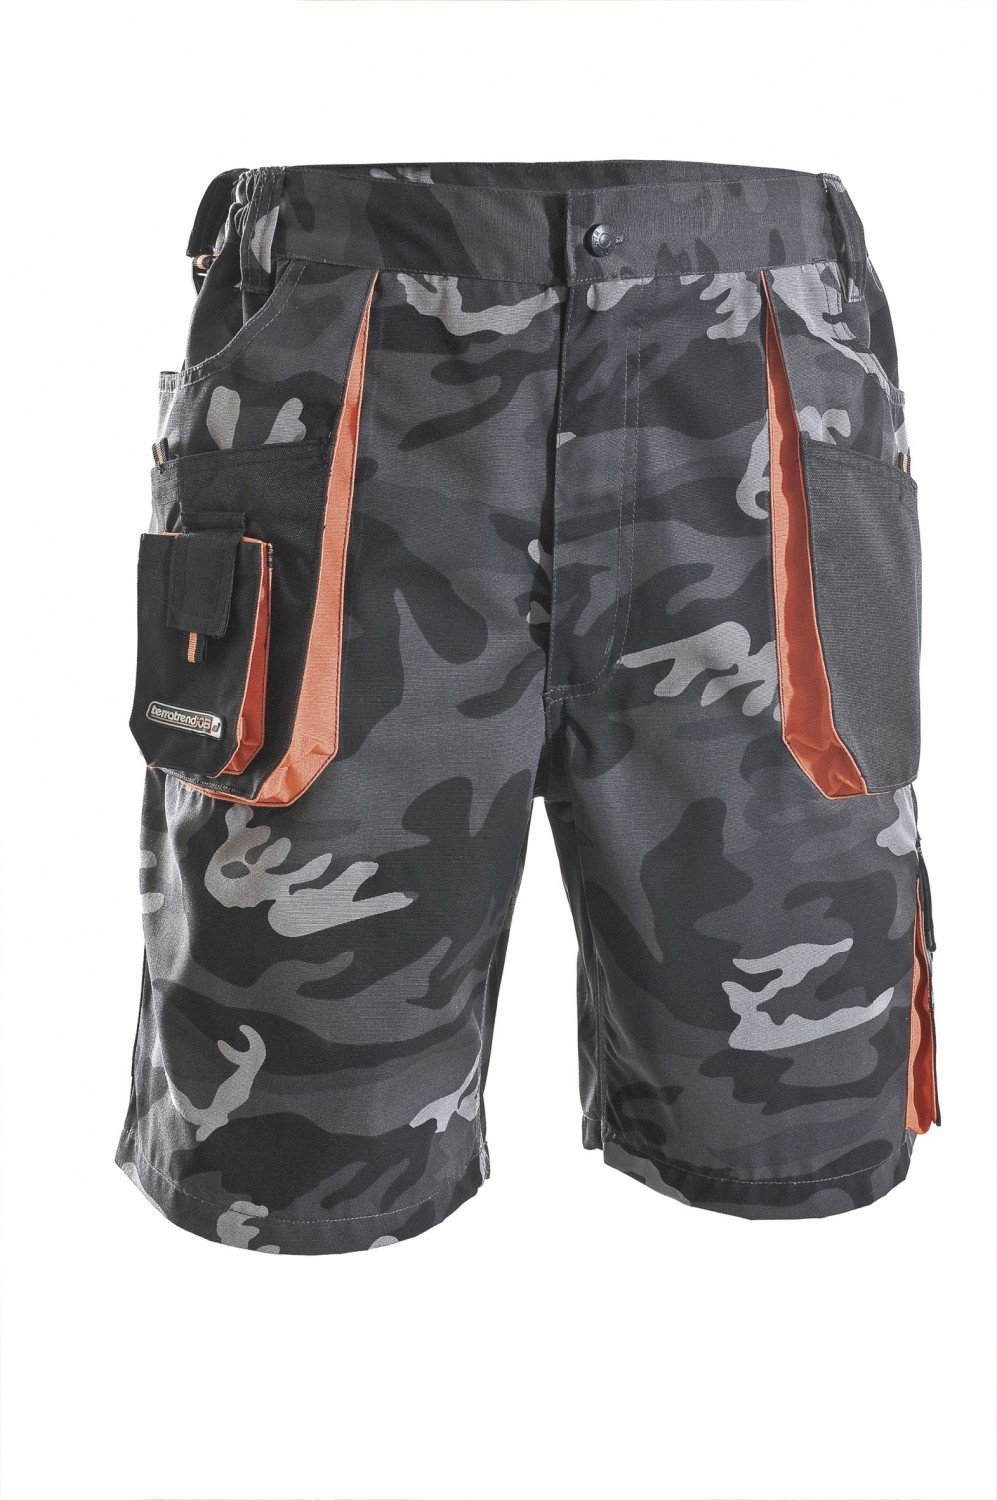 Herren Shorts camouflage/schwarz/orange Größe 52